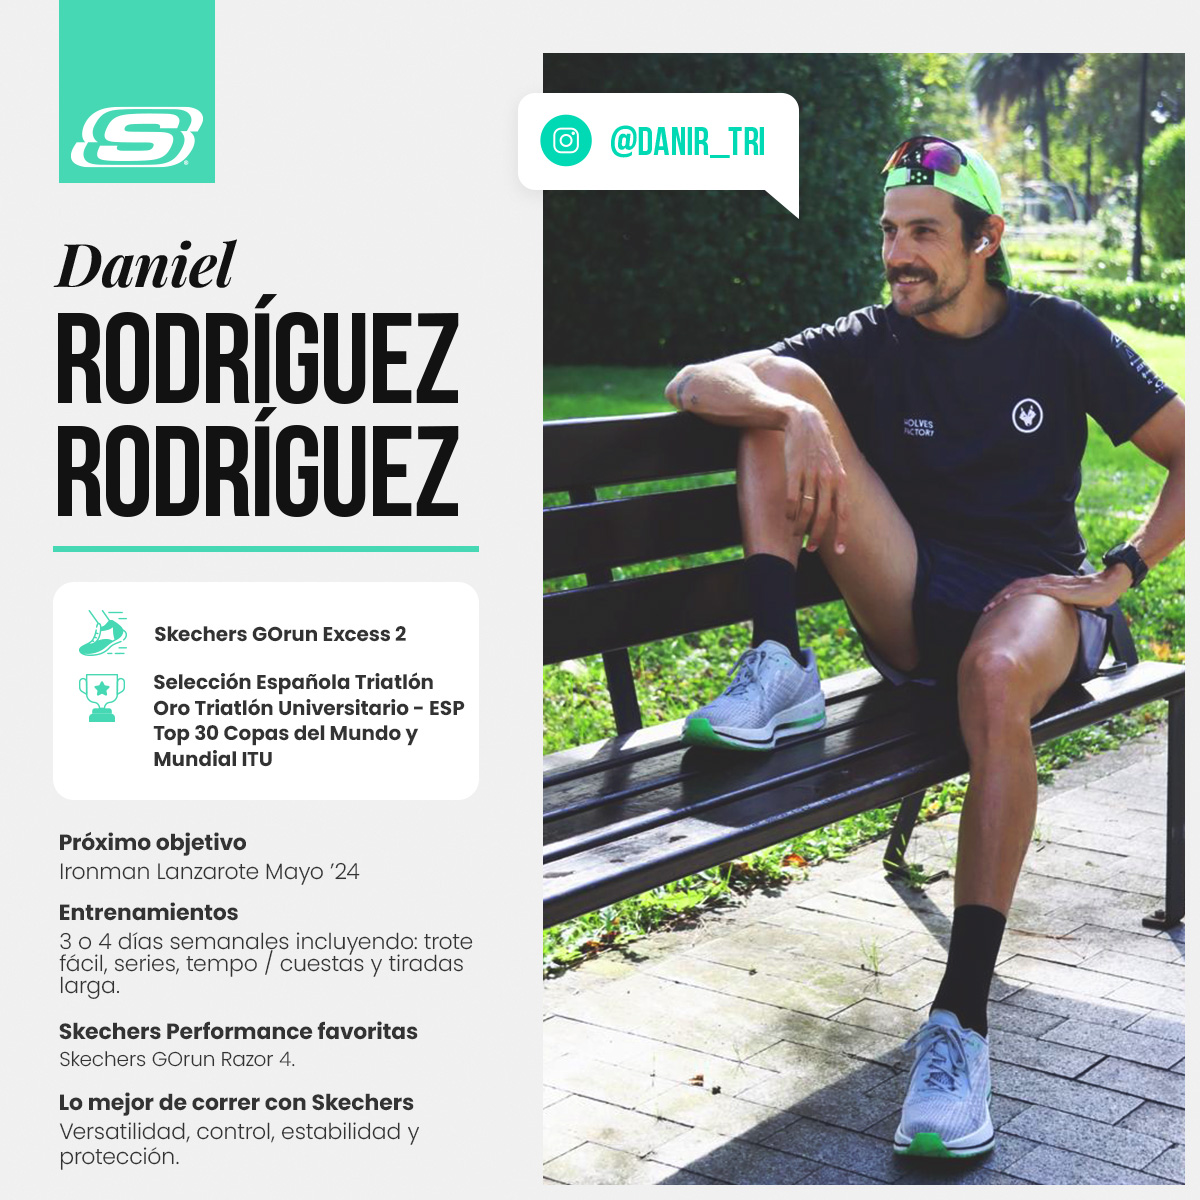 Nuestro atleta Daniel Rodríguez tiene claro su próximo reto con sus Skechers ➡️ IRONMAN Lanzarote.